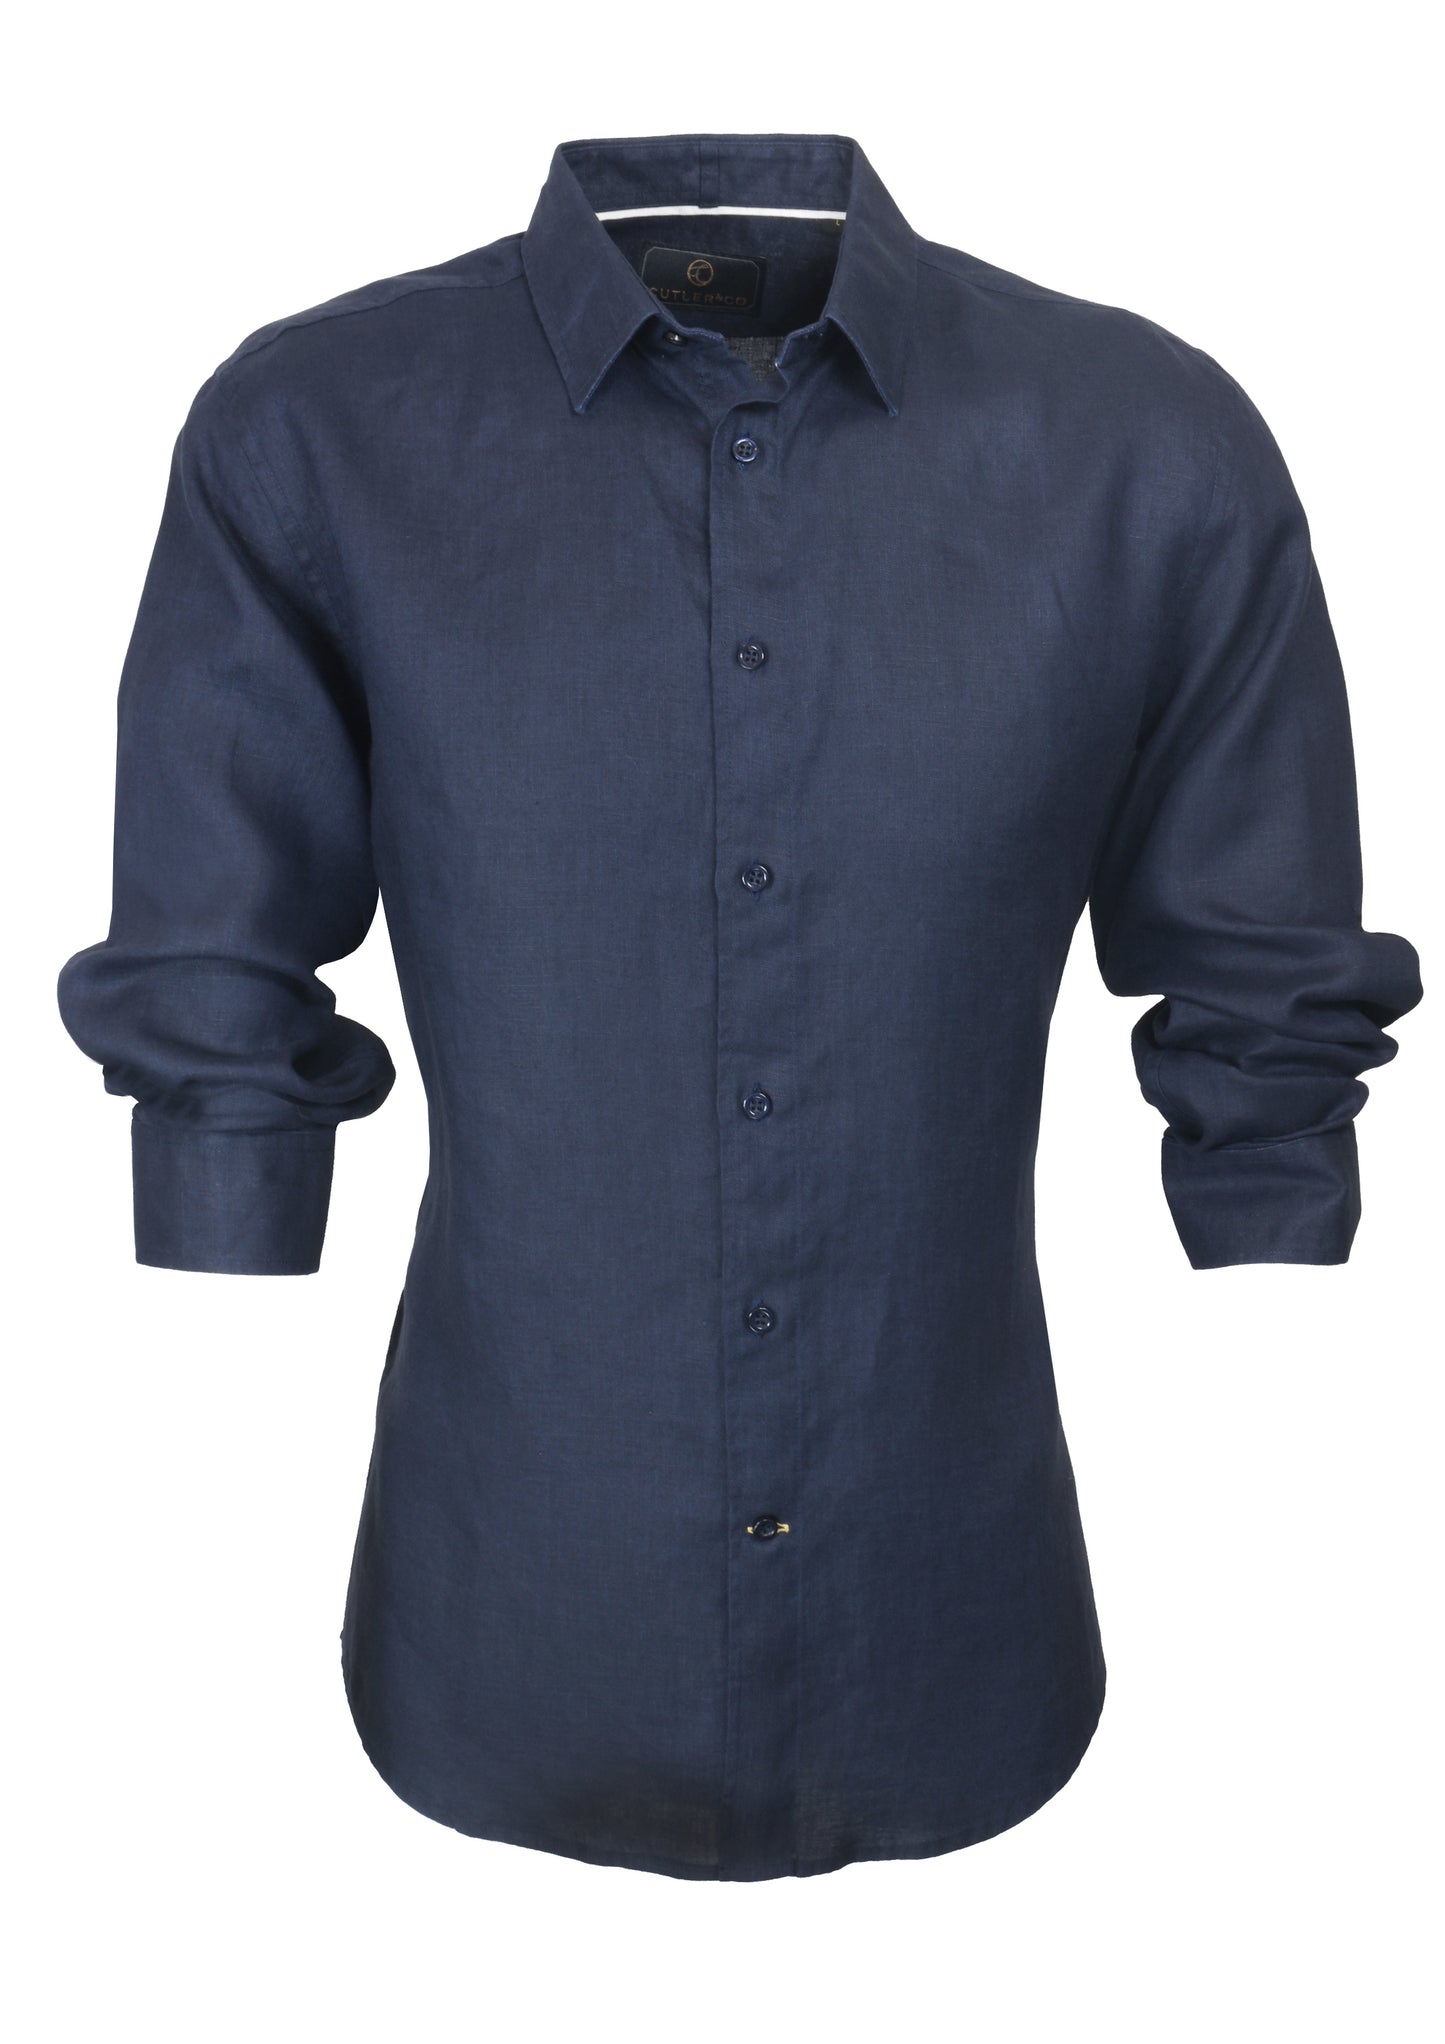 Cutler & Co - Blake Linen Shirt - Navy